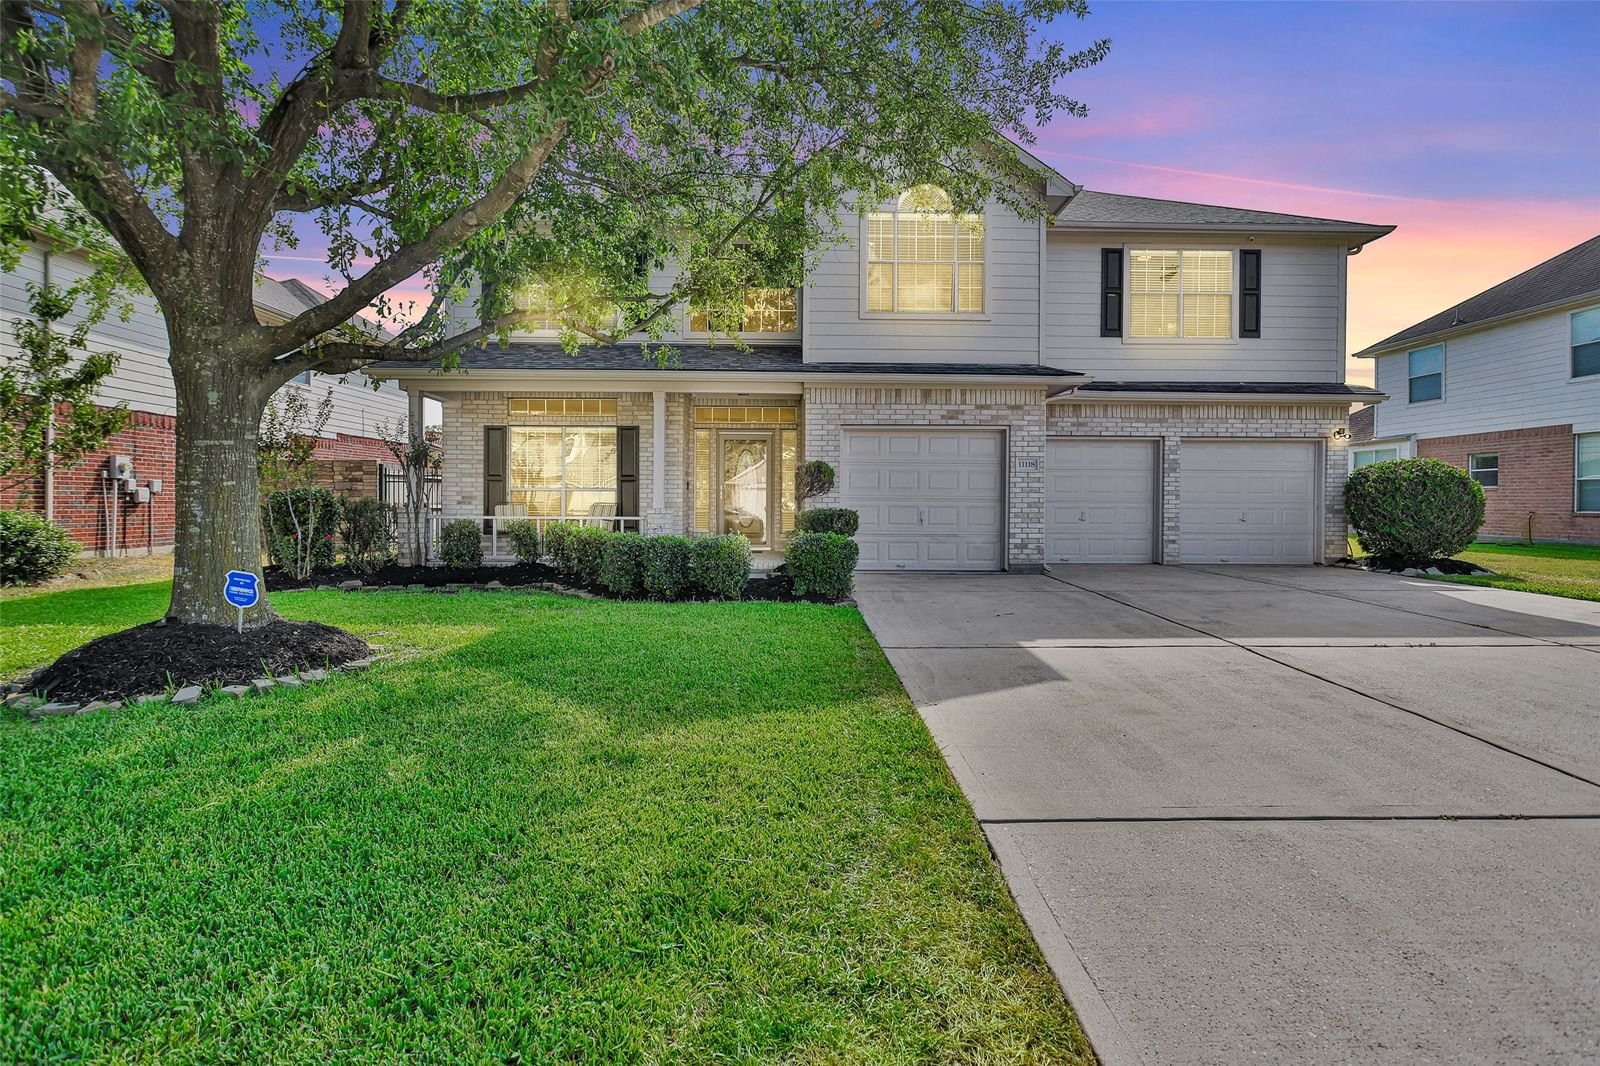 Real estate property located at 11118 Fairway, Harris, Heron Lakes Estates, Houston, TX, US